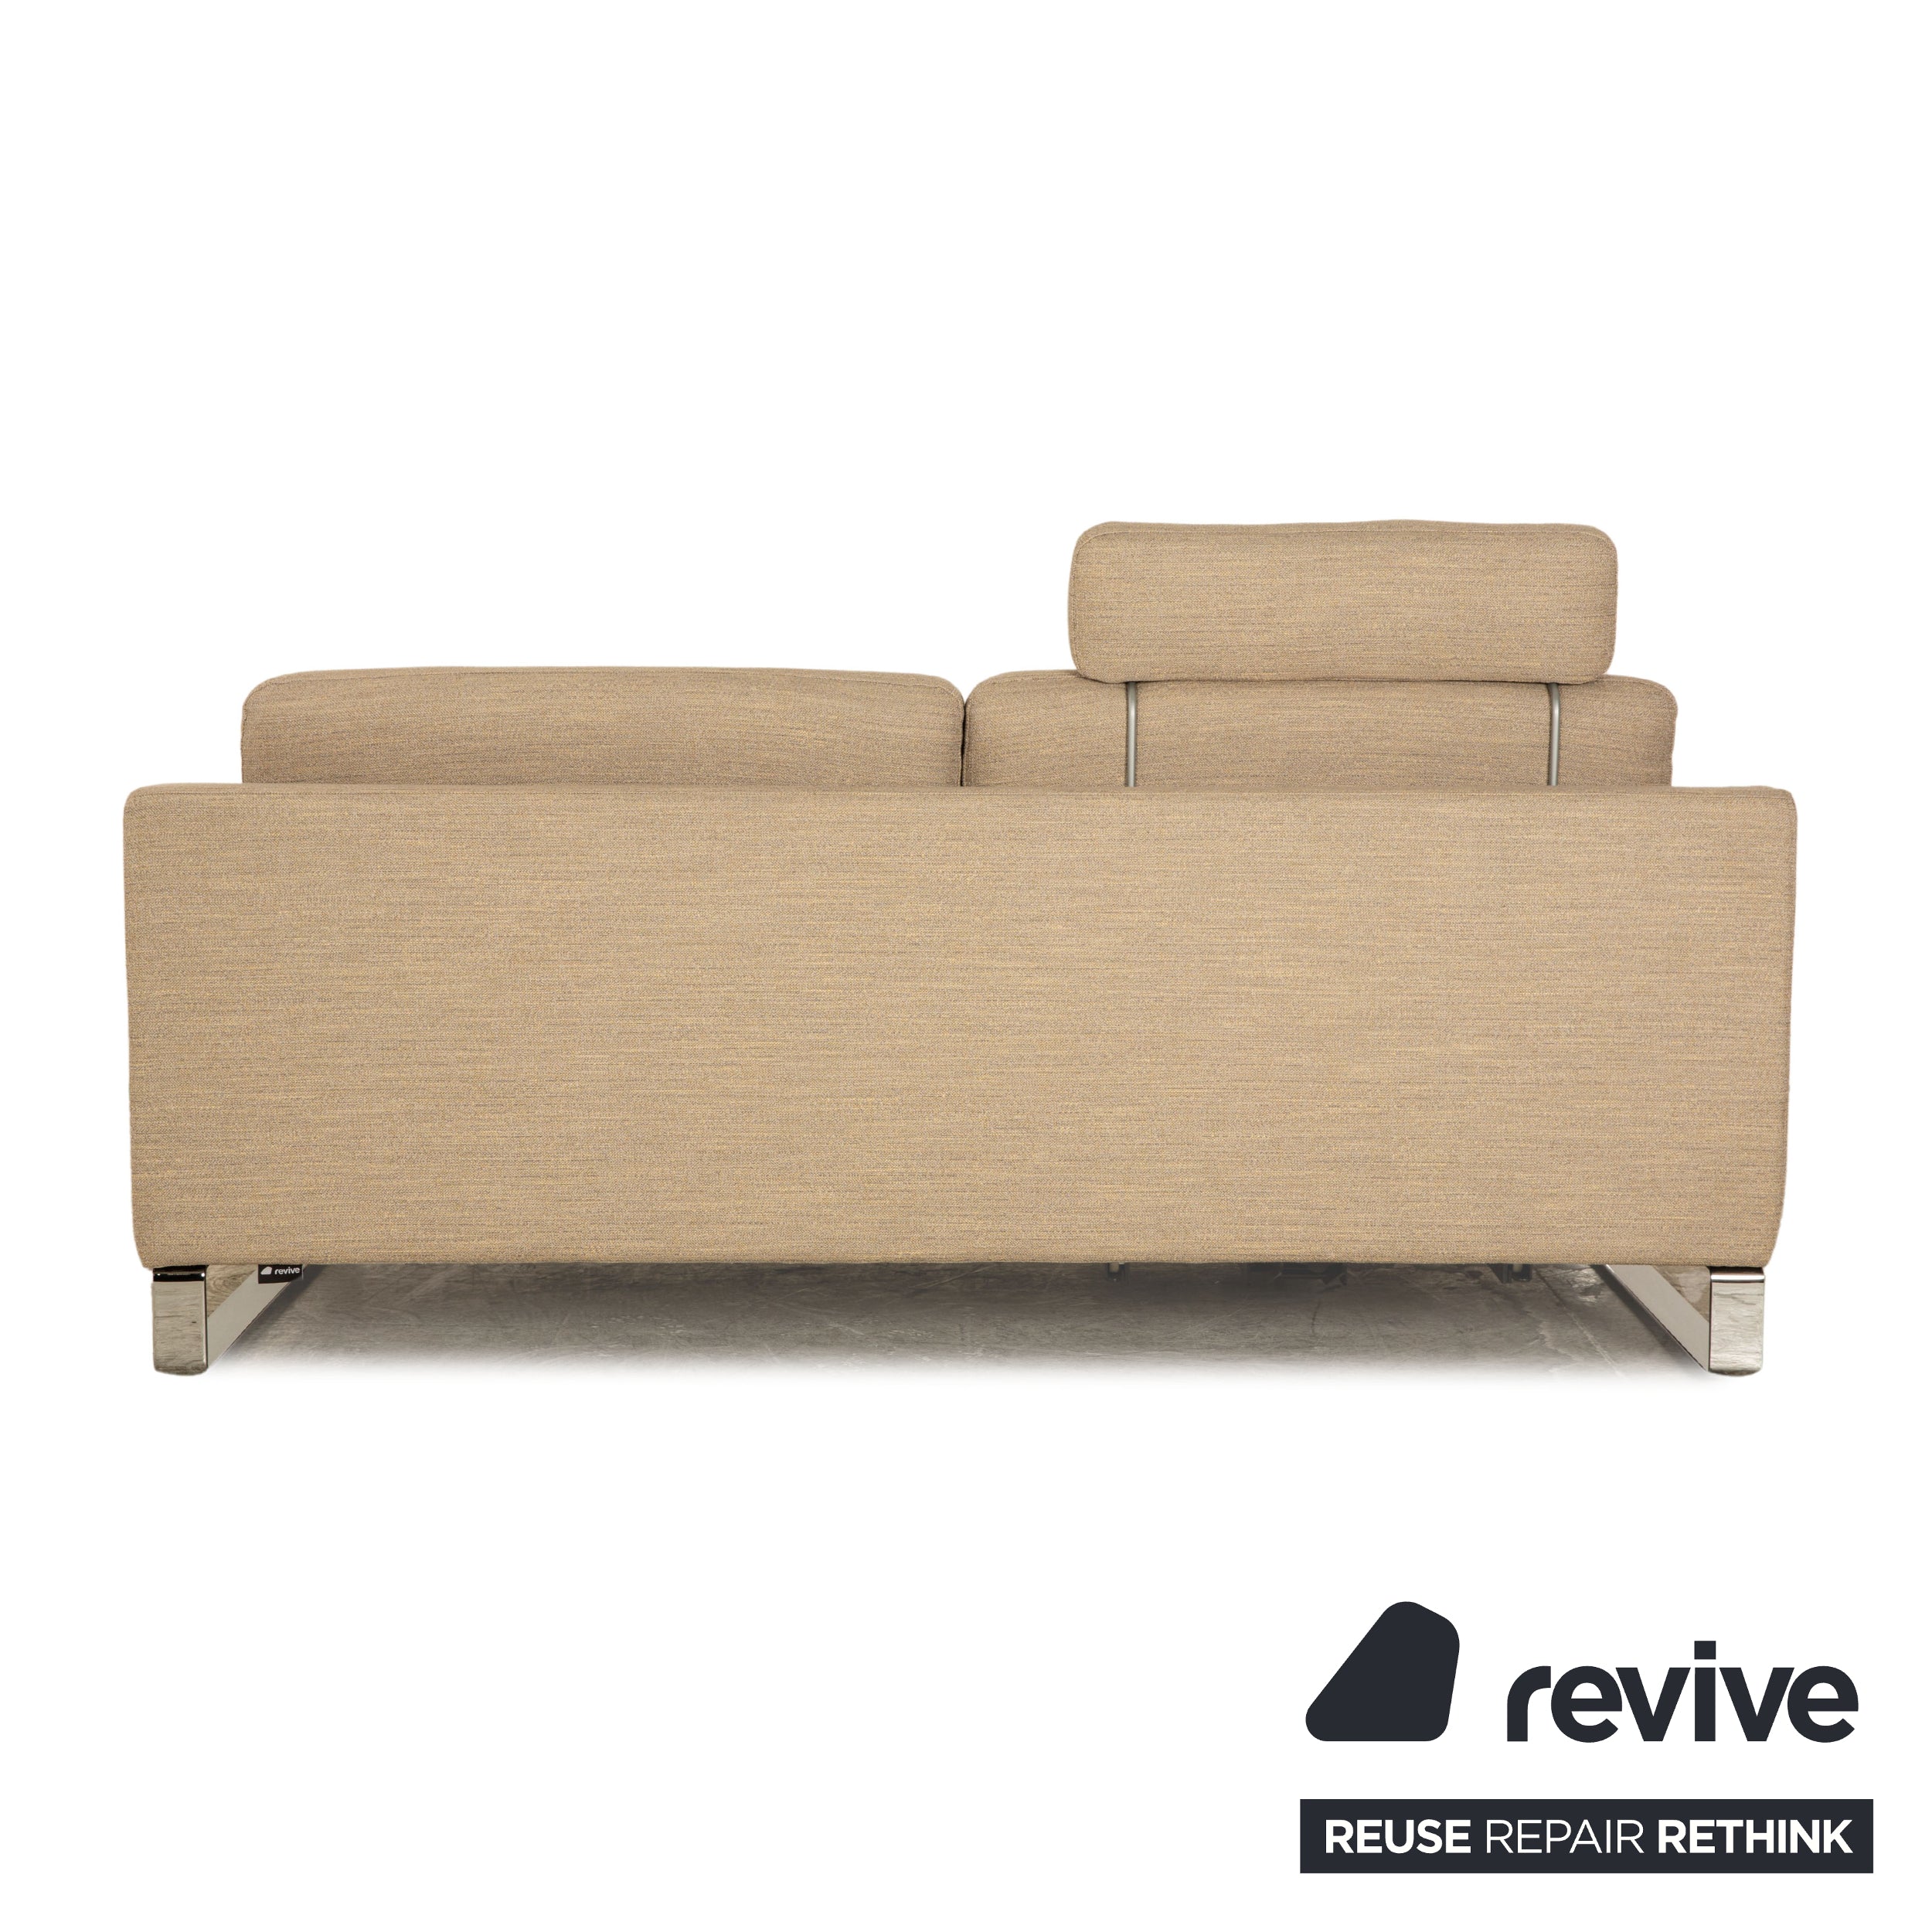 Rolf Benz Ego Stoff Zweisitzer Beige Sofa Couch manuelle Funktion